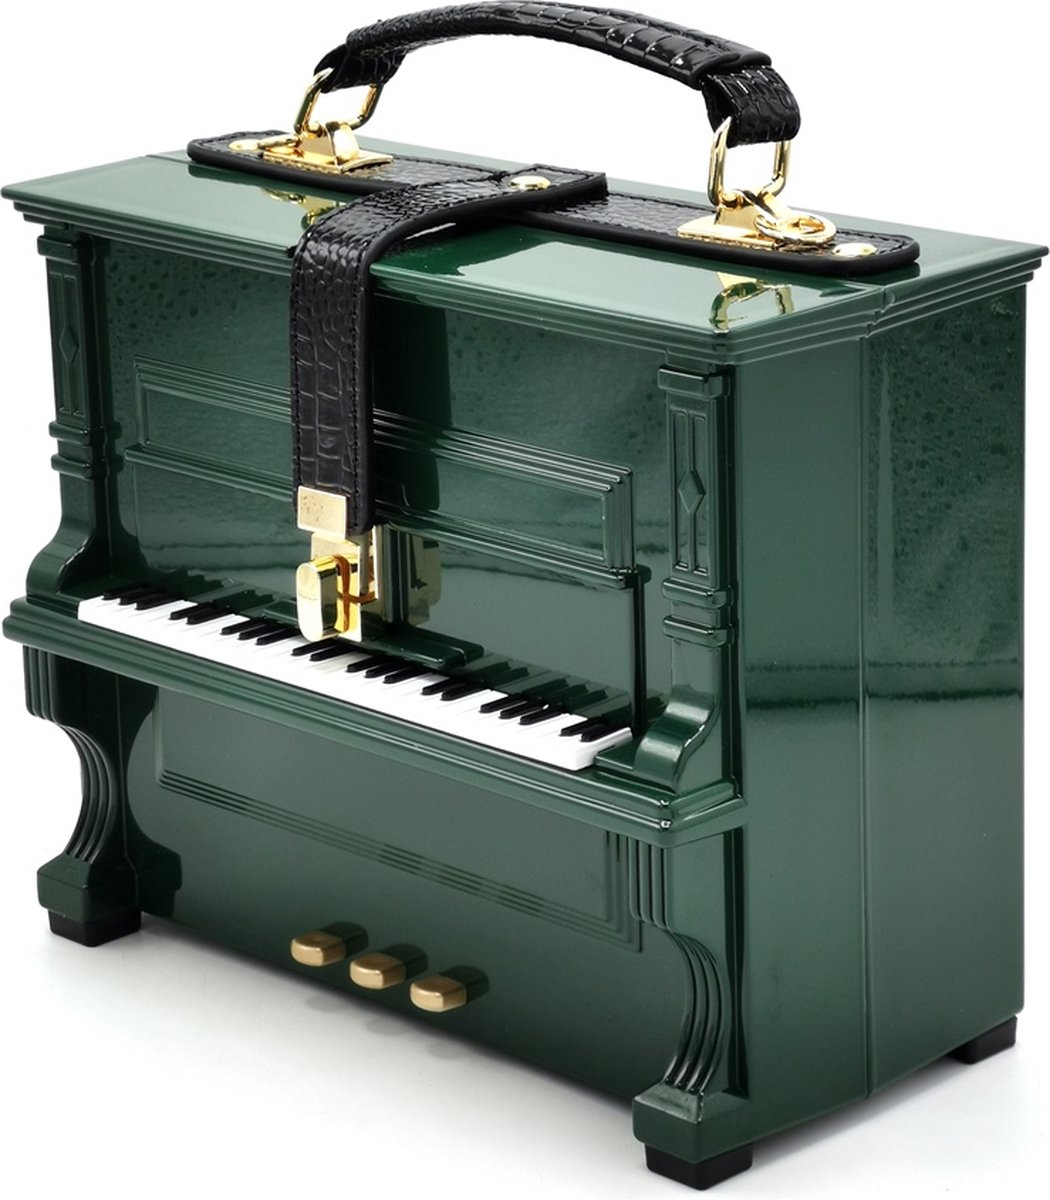 Piano Handtas in de vorm van Echte Piano groen - (bxhxd) ca.23cm x 18cm x 10cm